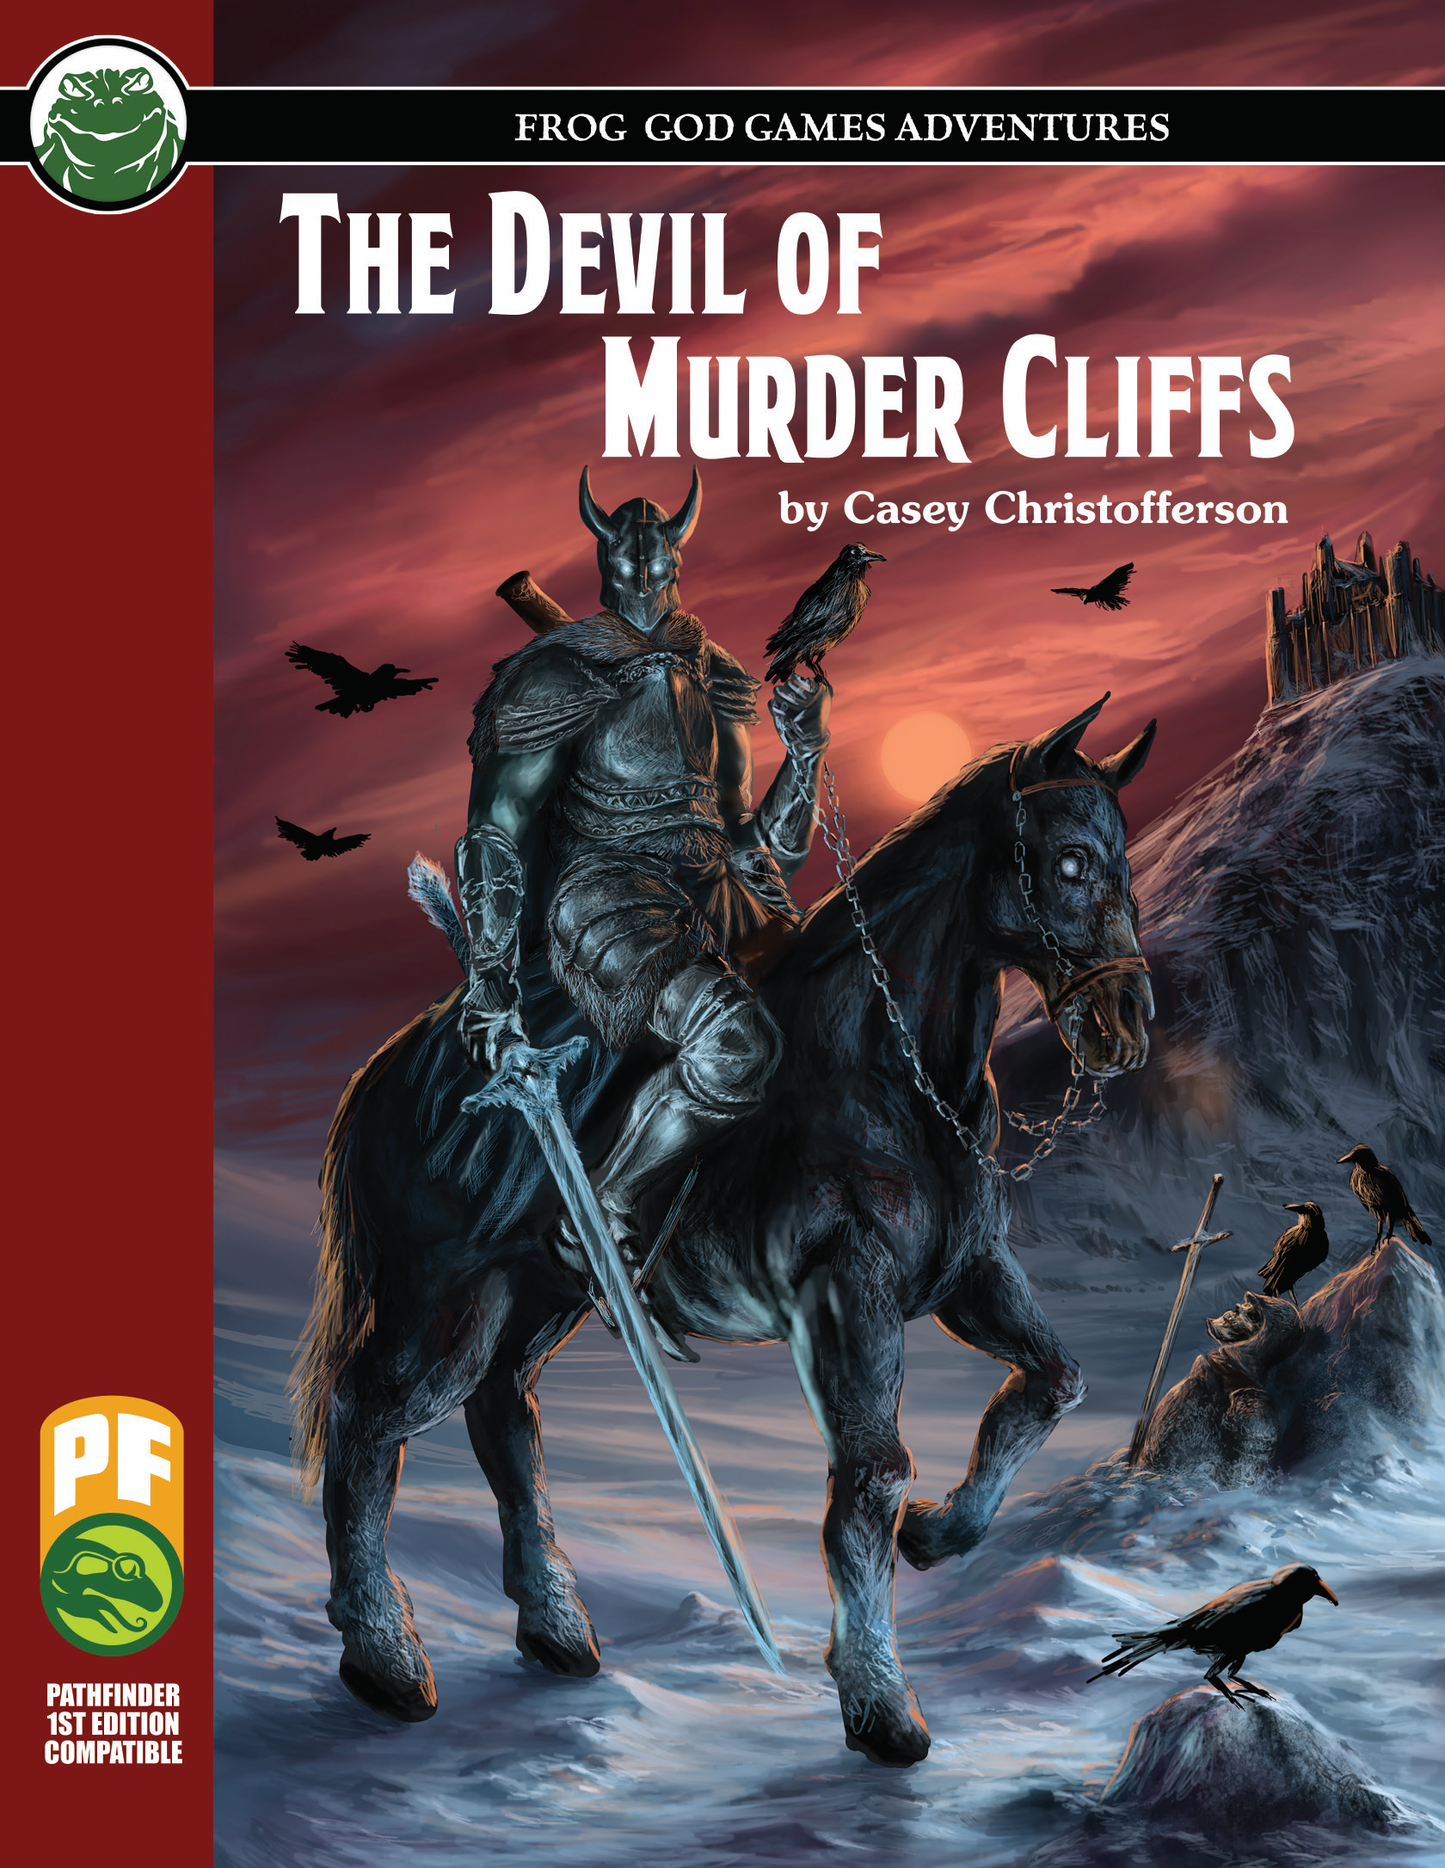 The Devil of Murder Cliffs